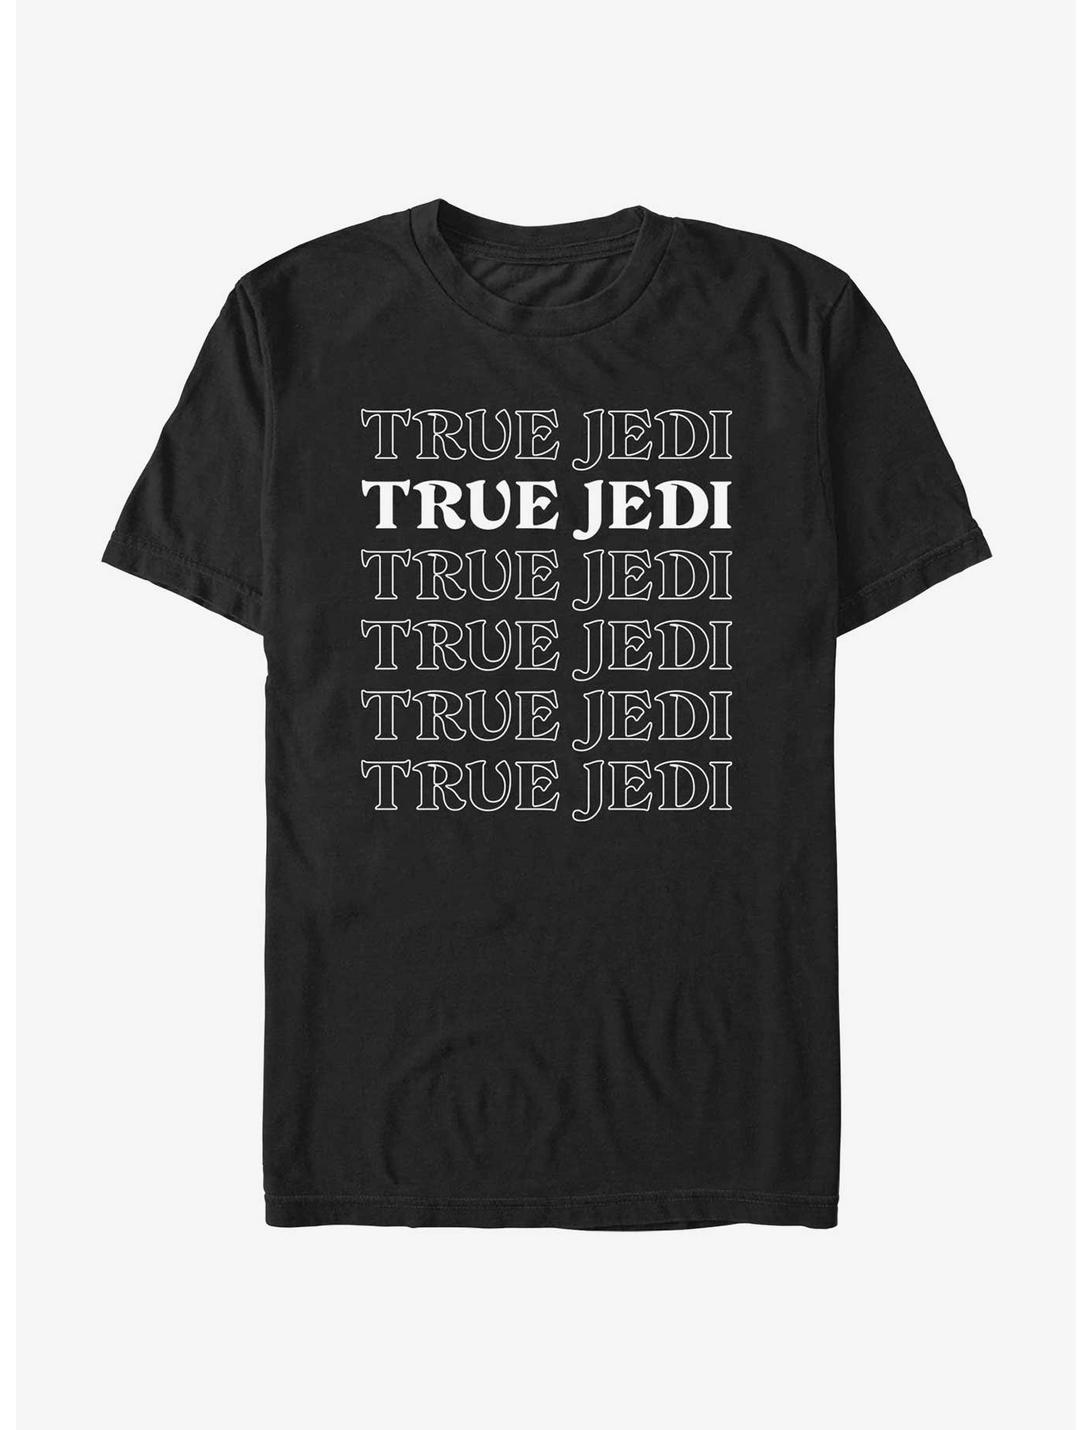 Star Wars True Jedi T-Shirt, BLACK, hi-res